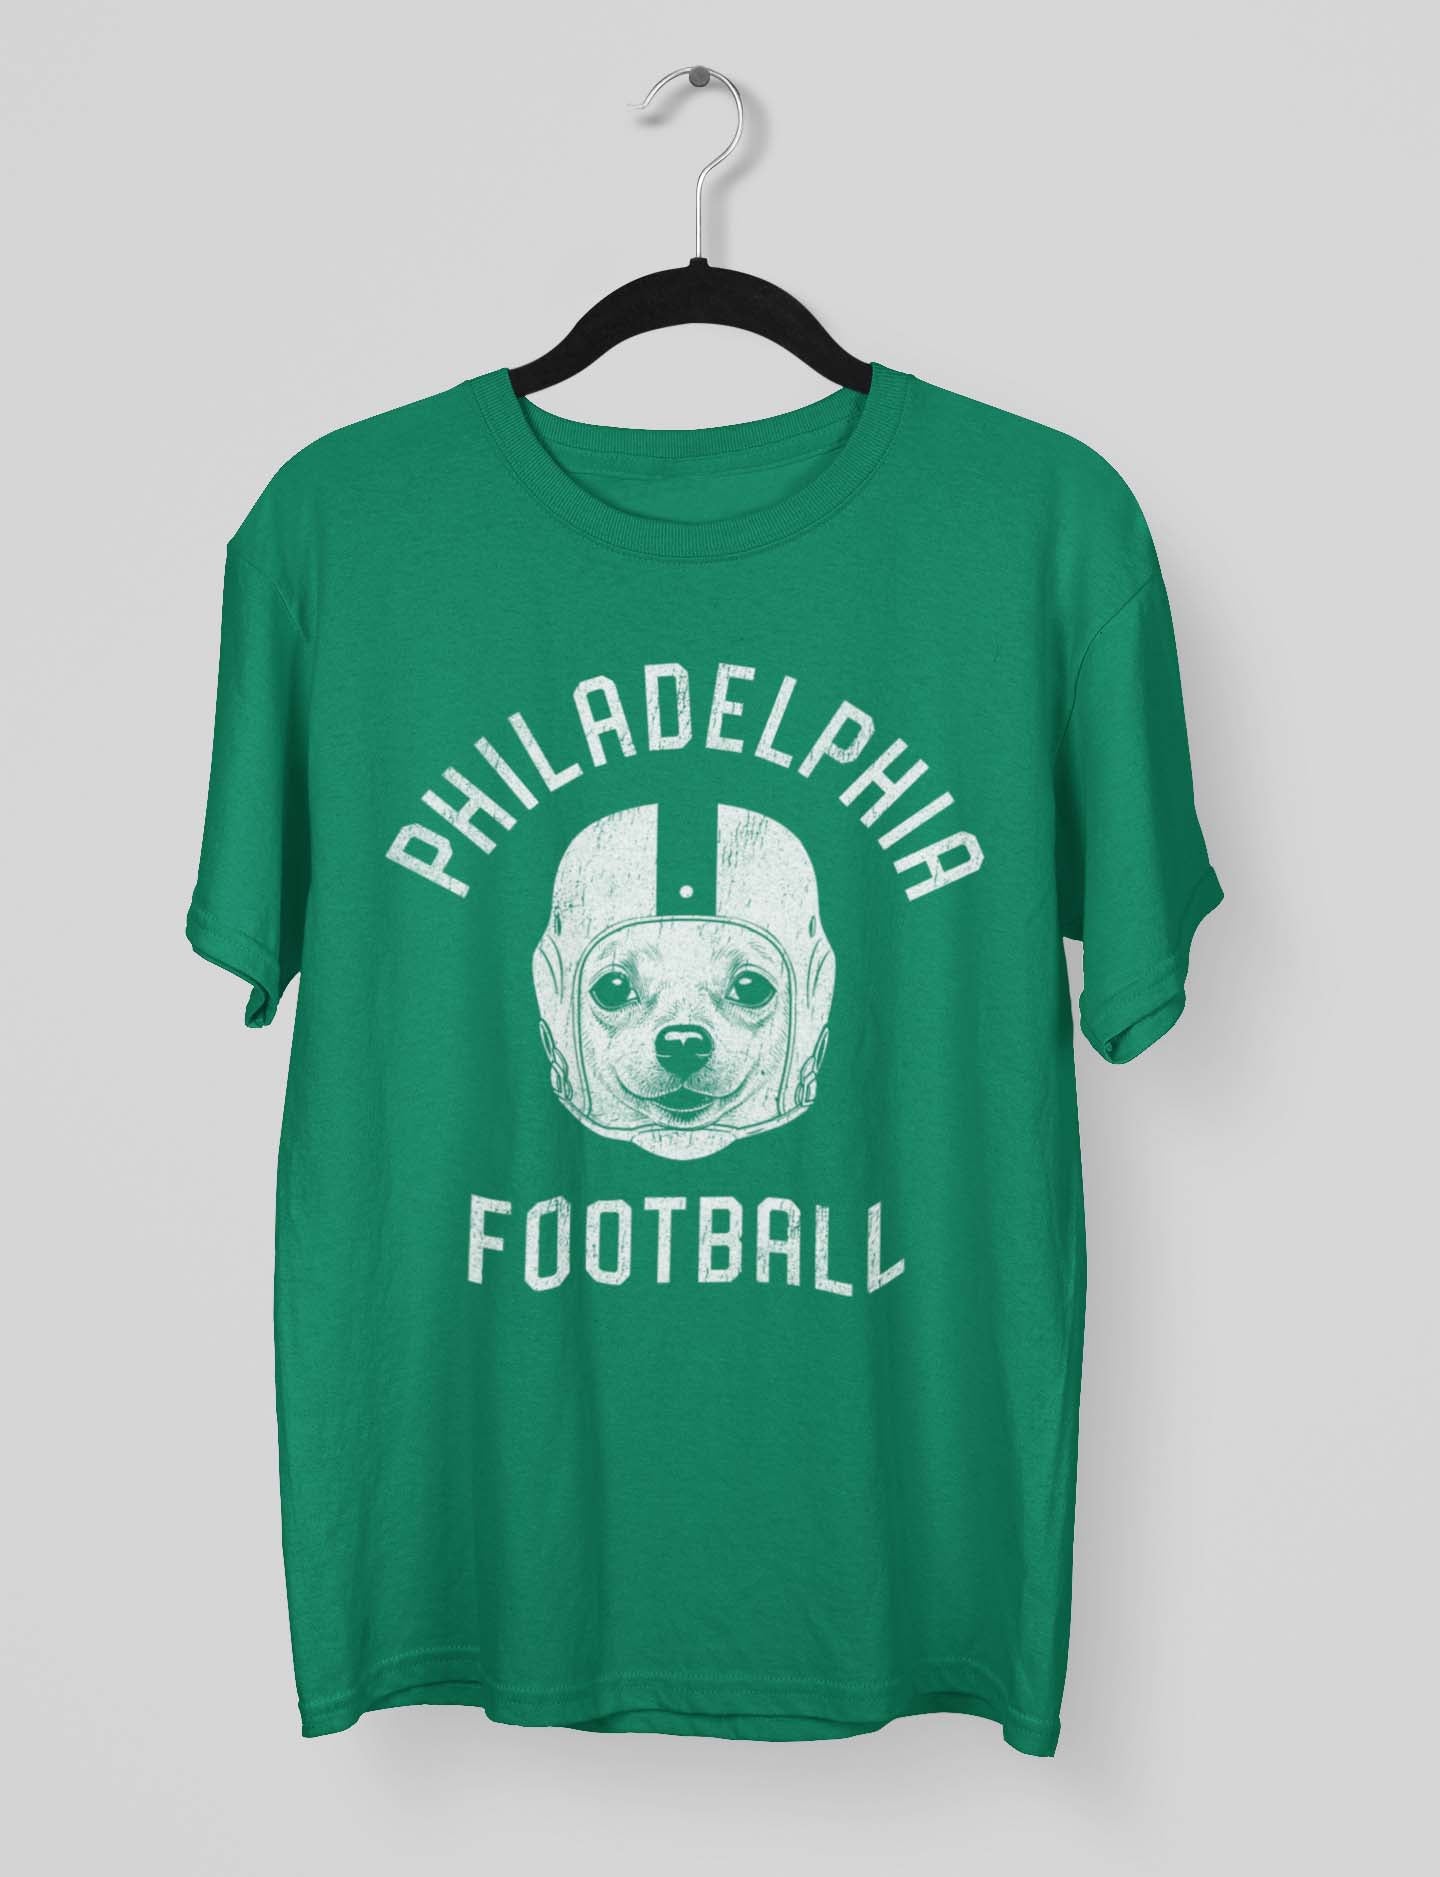 Philadelphia Football Chihuahua T-Shirt